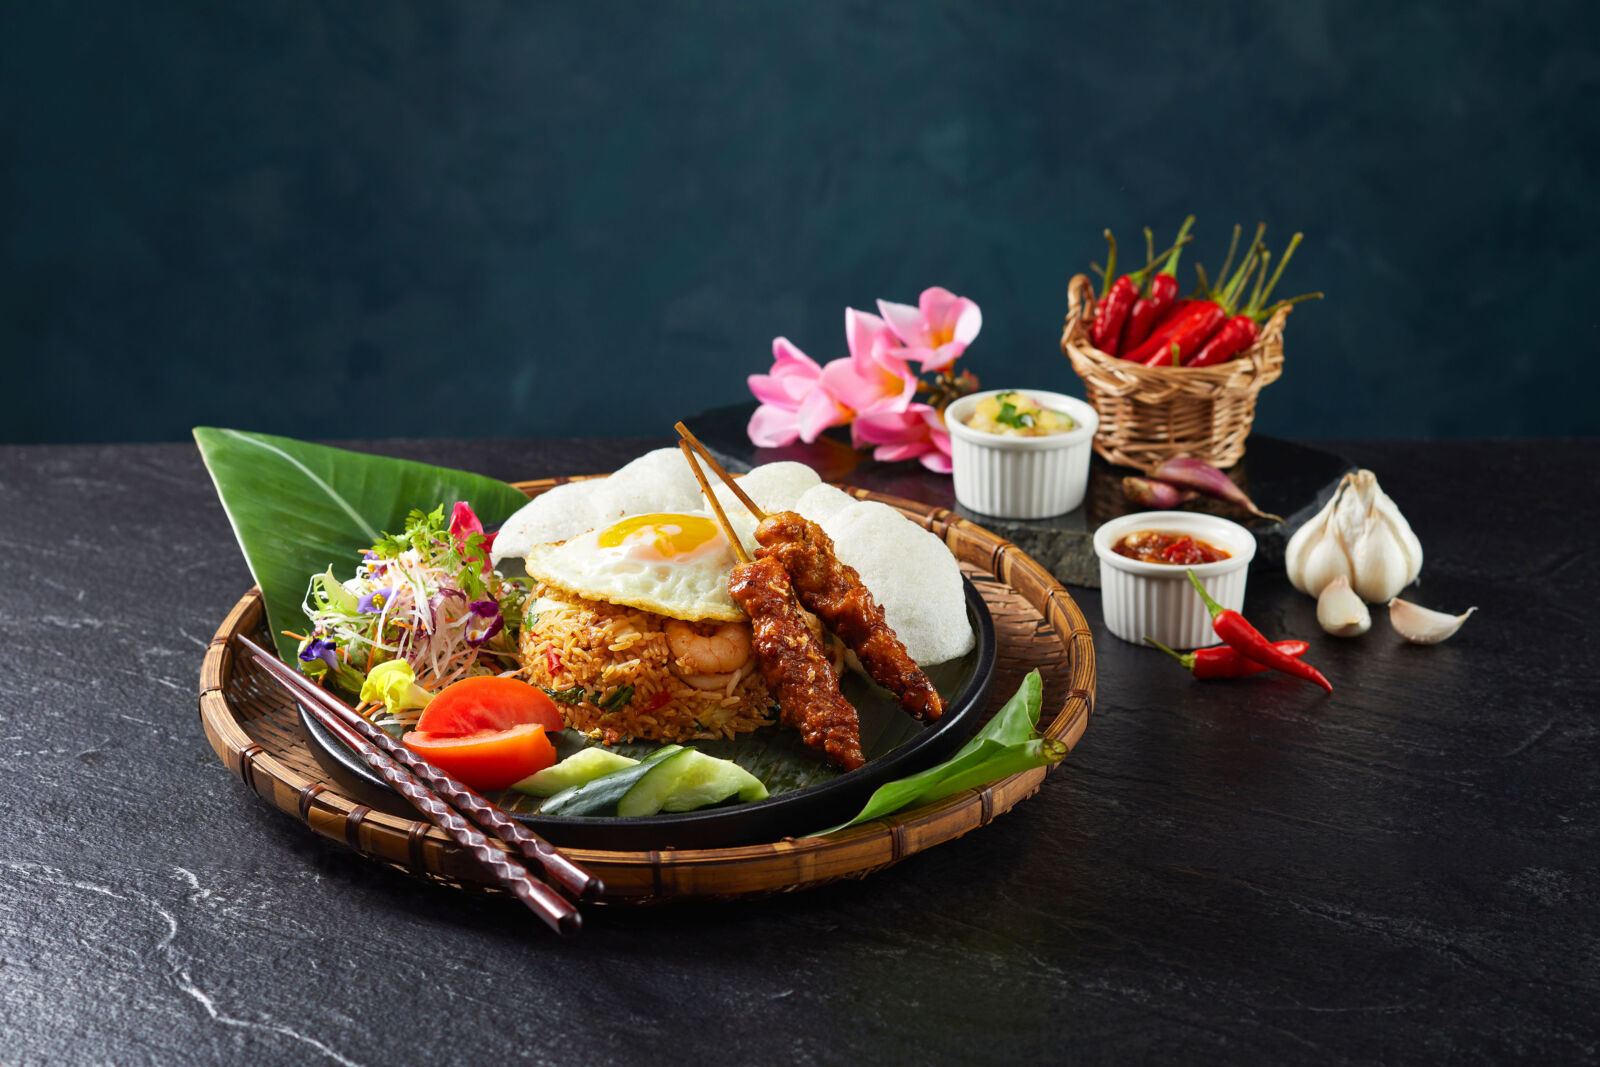 【有影】Asia49亞洲料理及酒廊迎來印尼名廚 推全新南洋榜單美食菜單 247